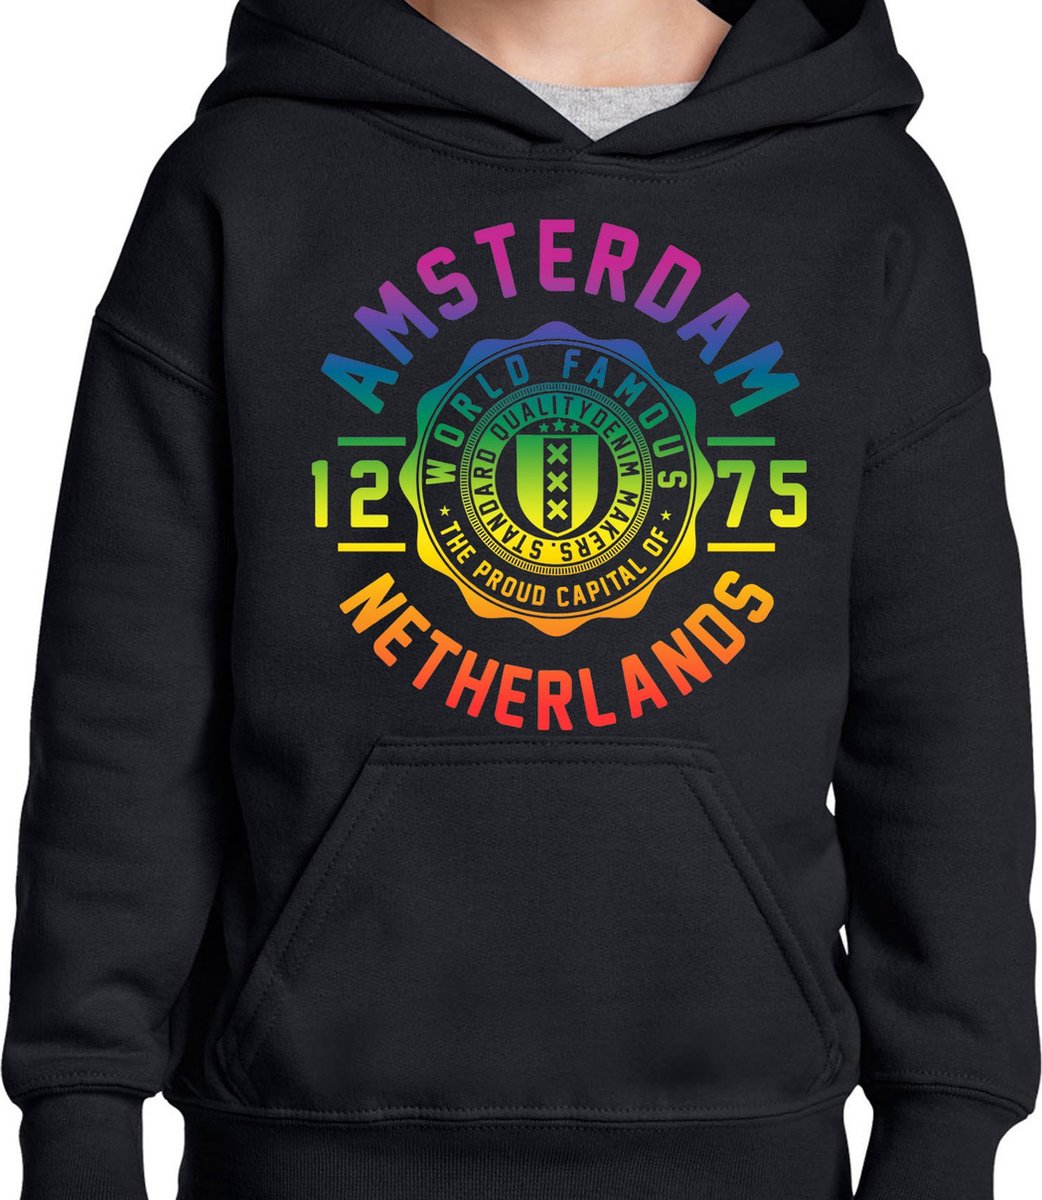 Hooded Sweater - Met Trekkoord - Capuchon - Chill - Trui - Vest - met capuchon - Outdoor - Gay Pride - Pride Rainbow - Regenboog - Amsterdam - World Famous - Zwart - Maat XL